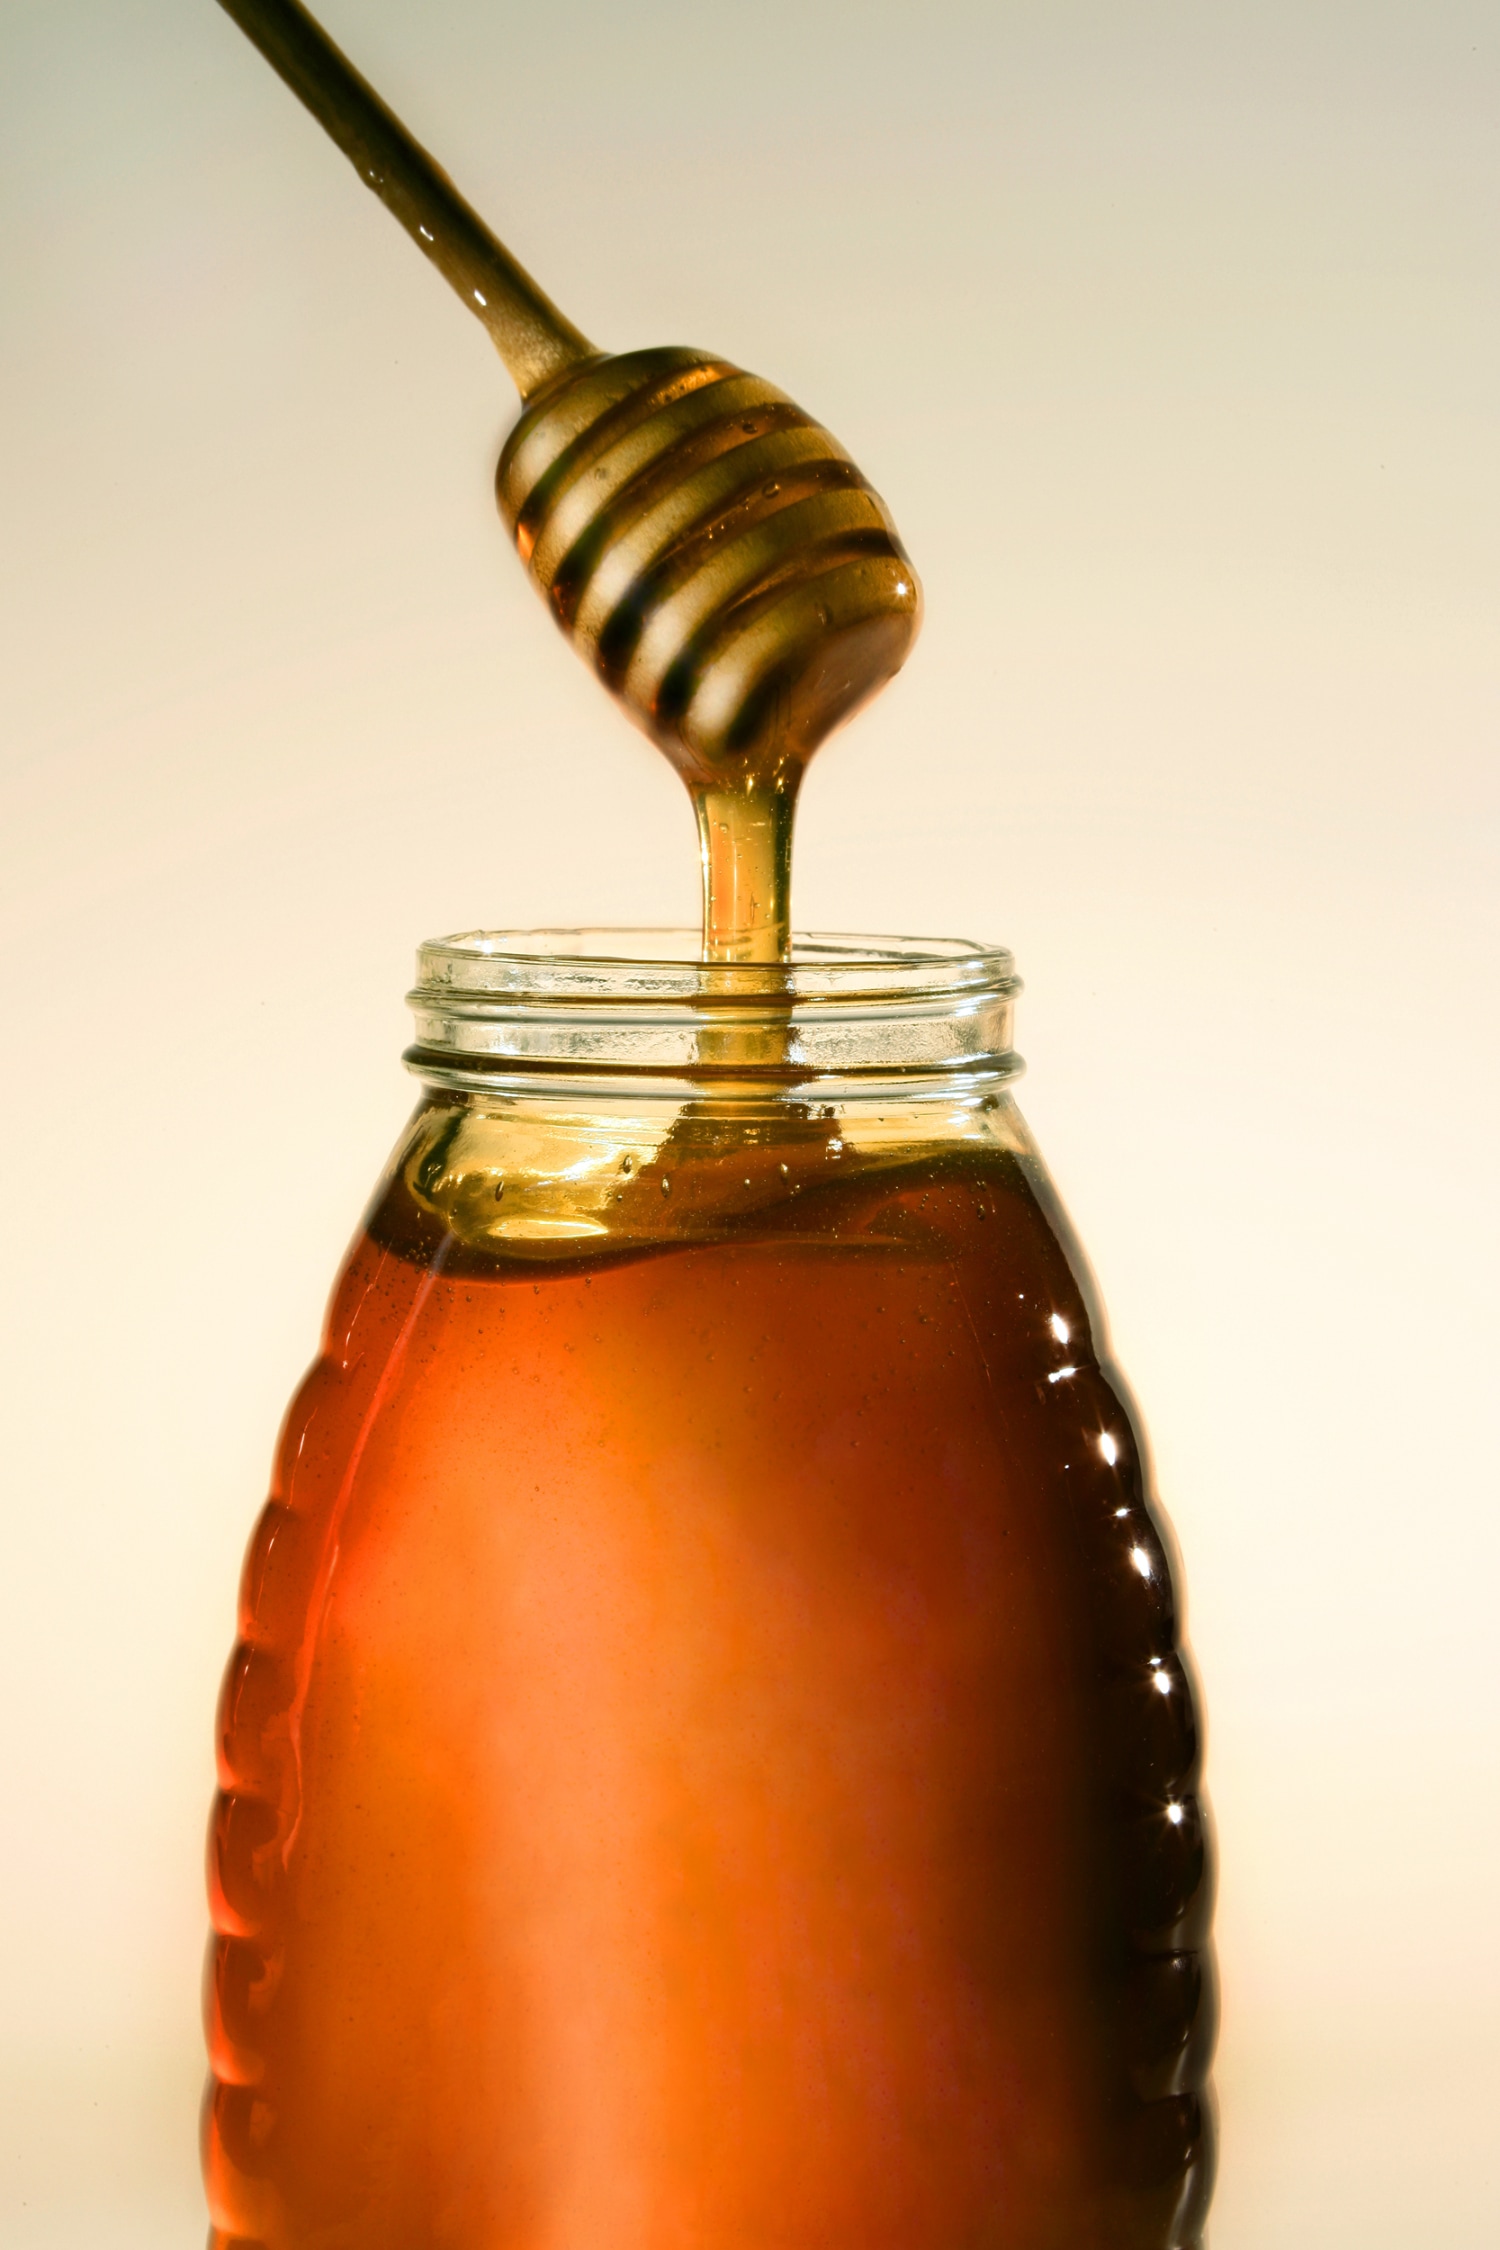 Royal Honey For VIP (Diabetic)